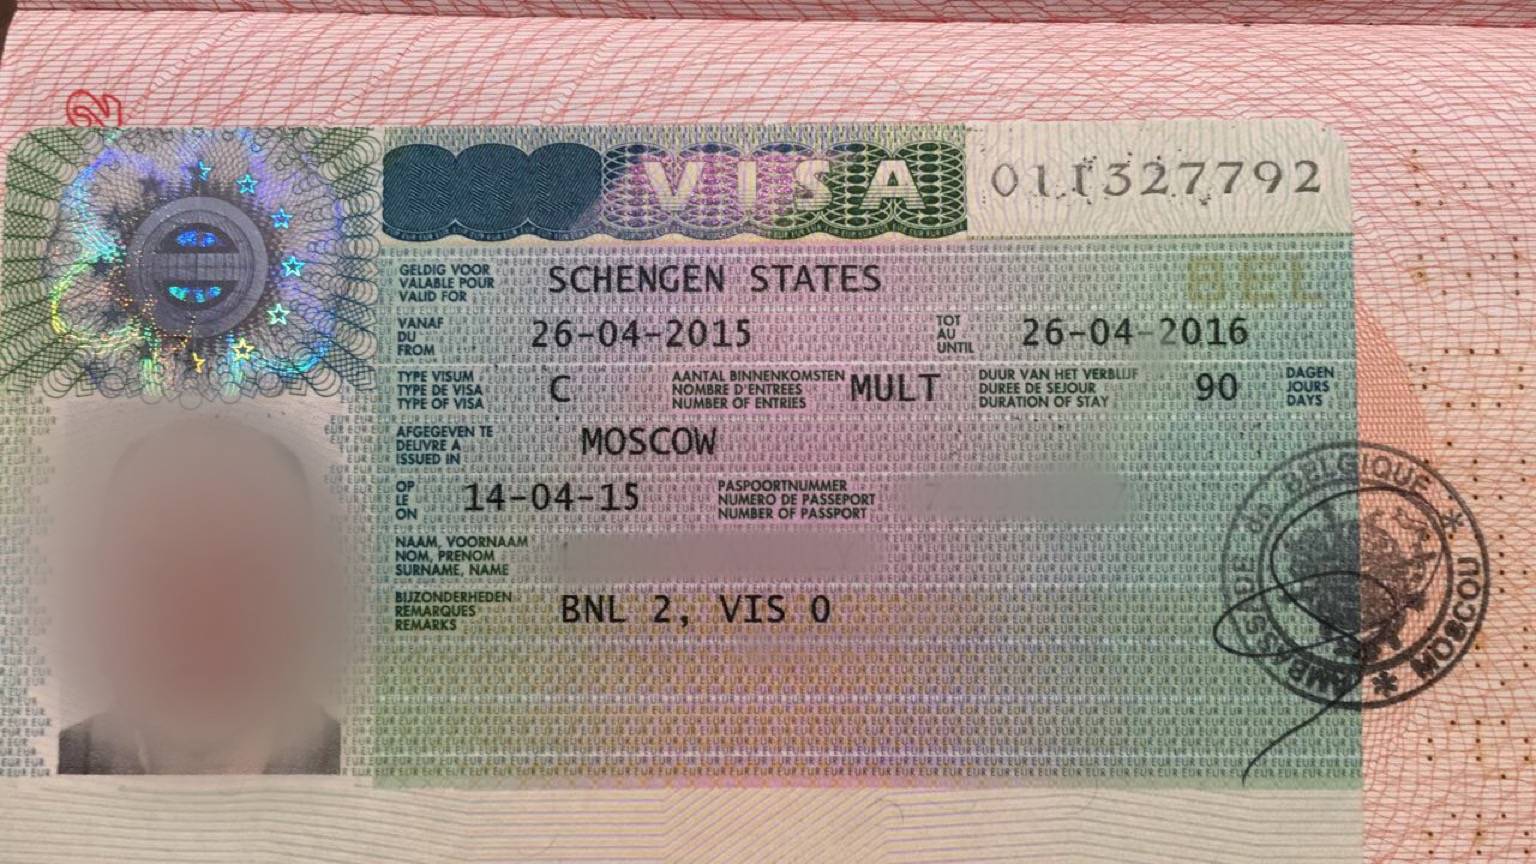 Получение визы в венгрию: необходимые документы, заполнение анкеты, фото